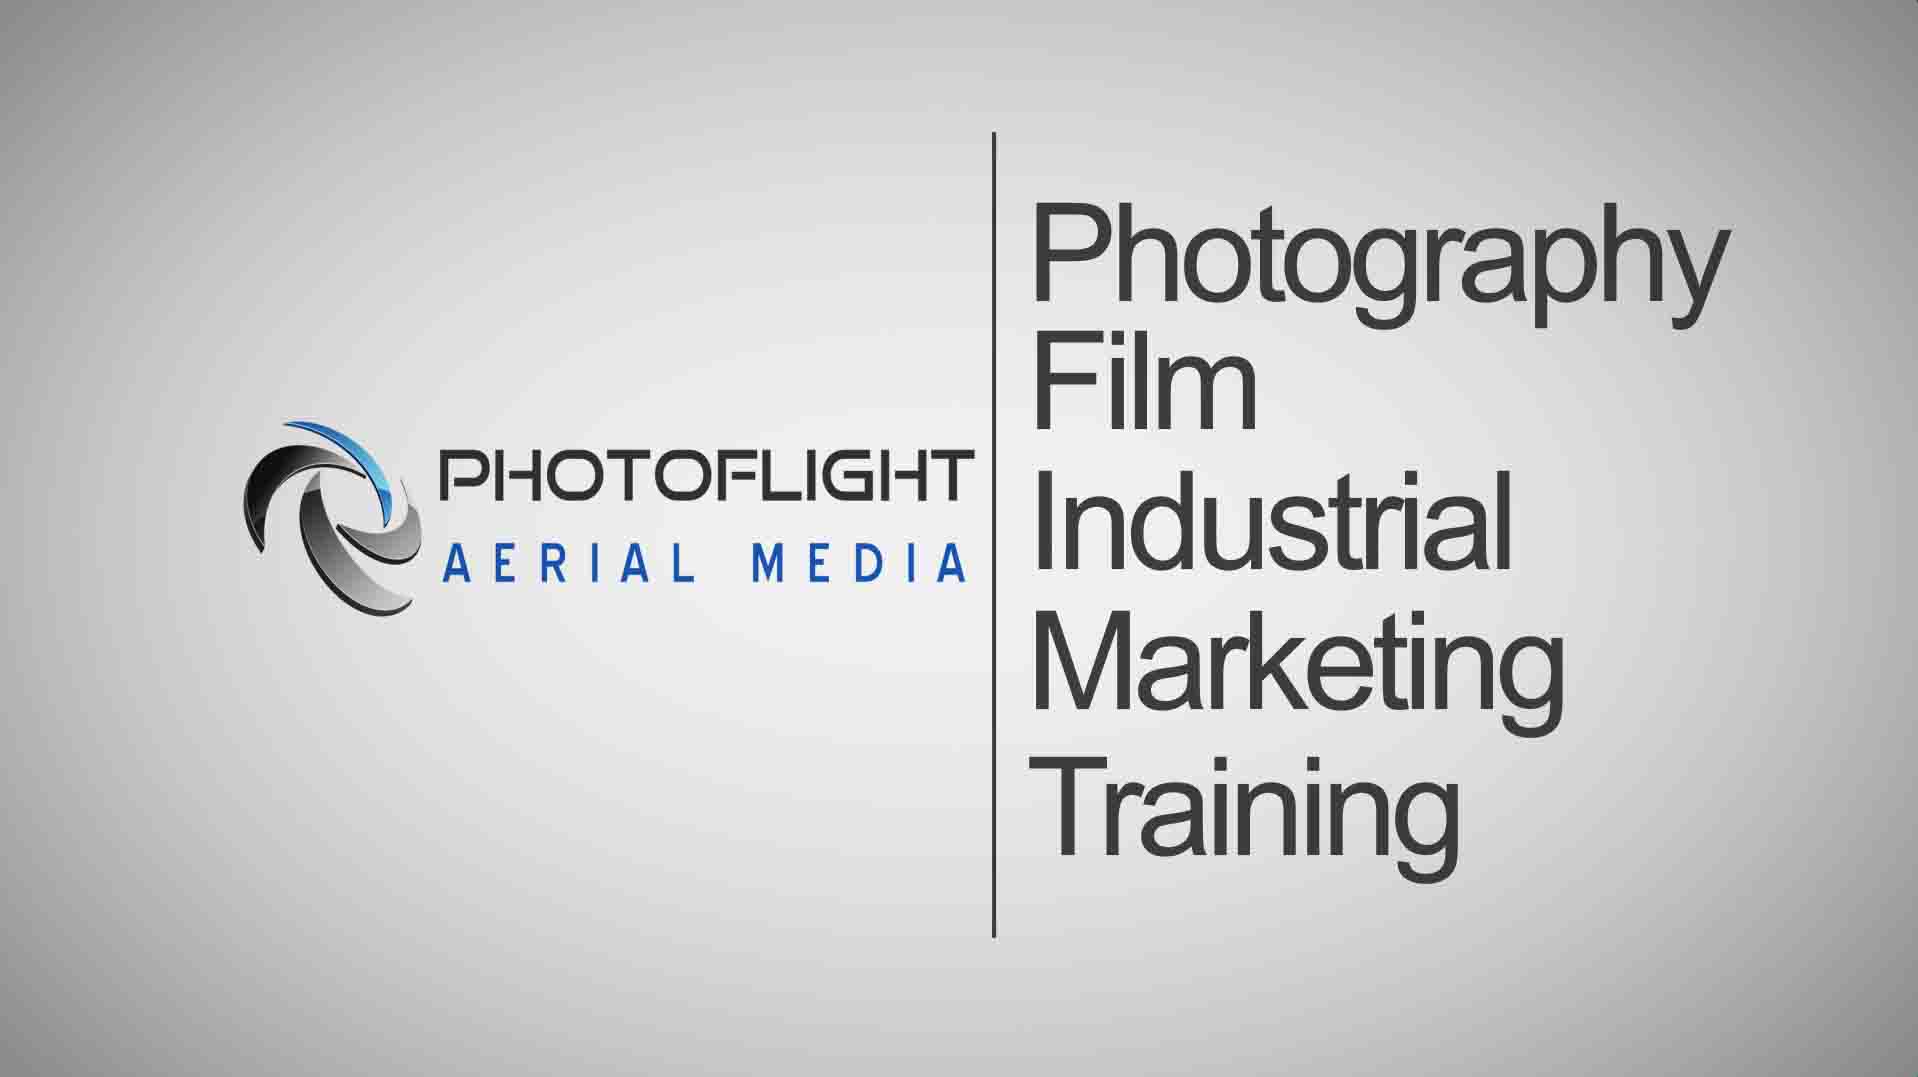 Photoflight Aerial Media Logo Drone Company